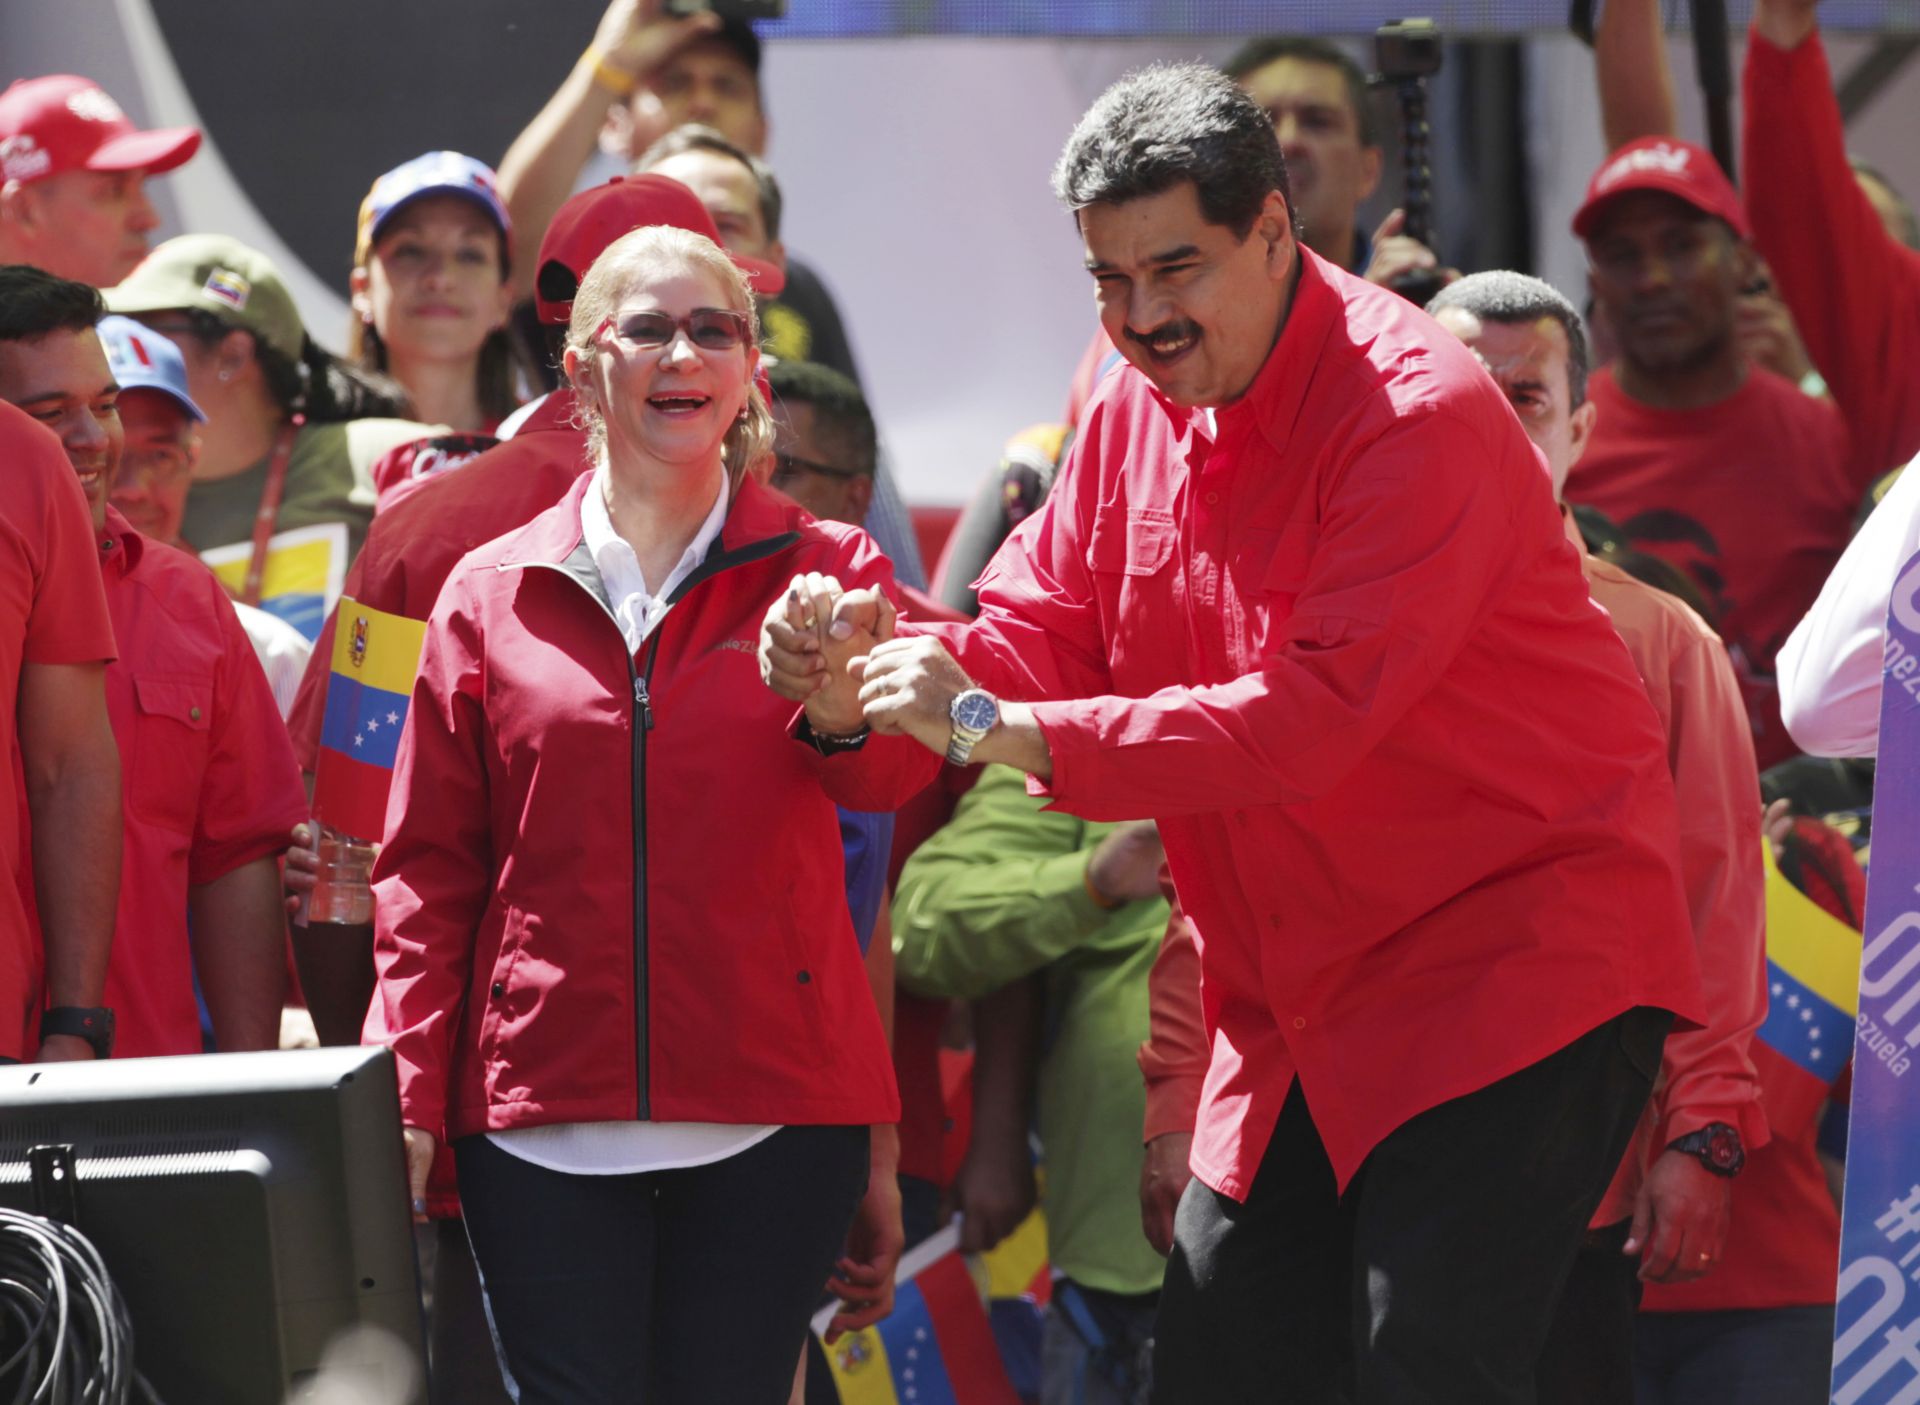  Според Ричардсън Мадуро (на снимката) също се стреми към подобряване на отношенията със САЩ